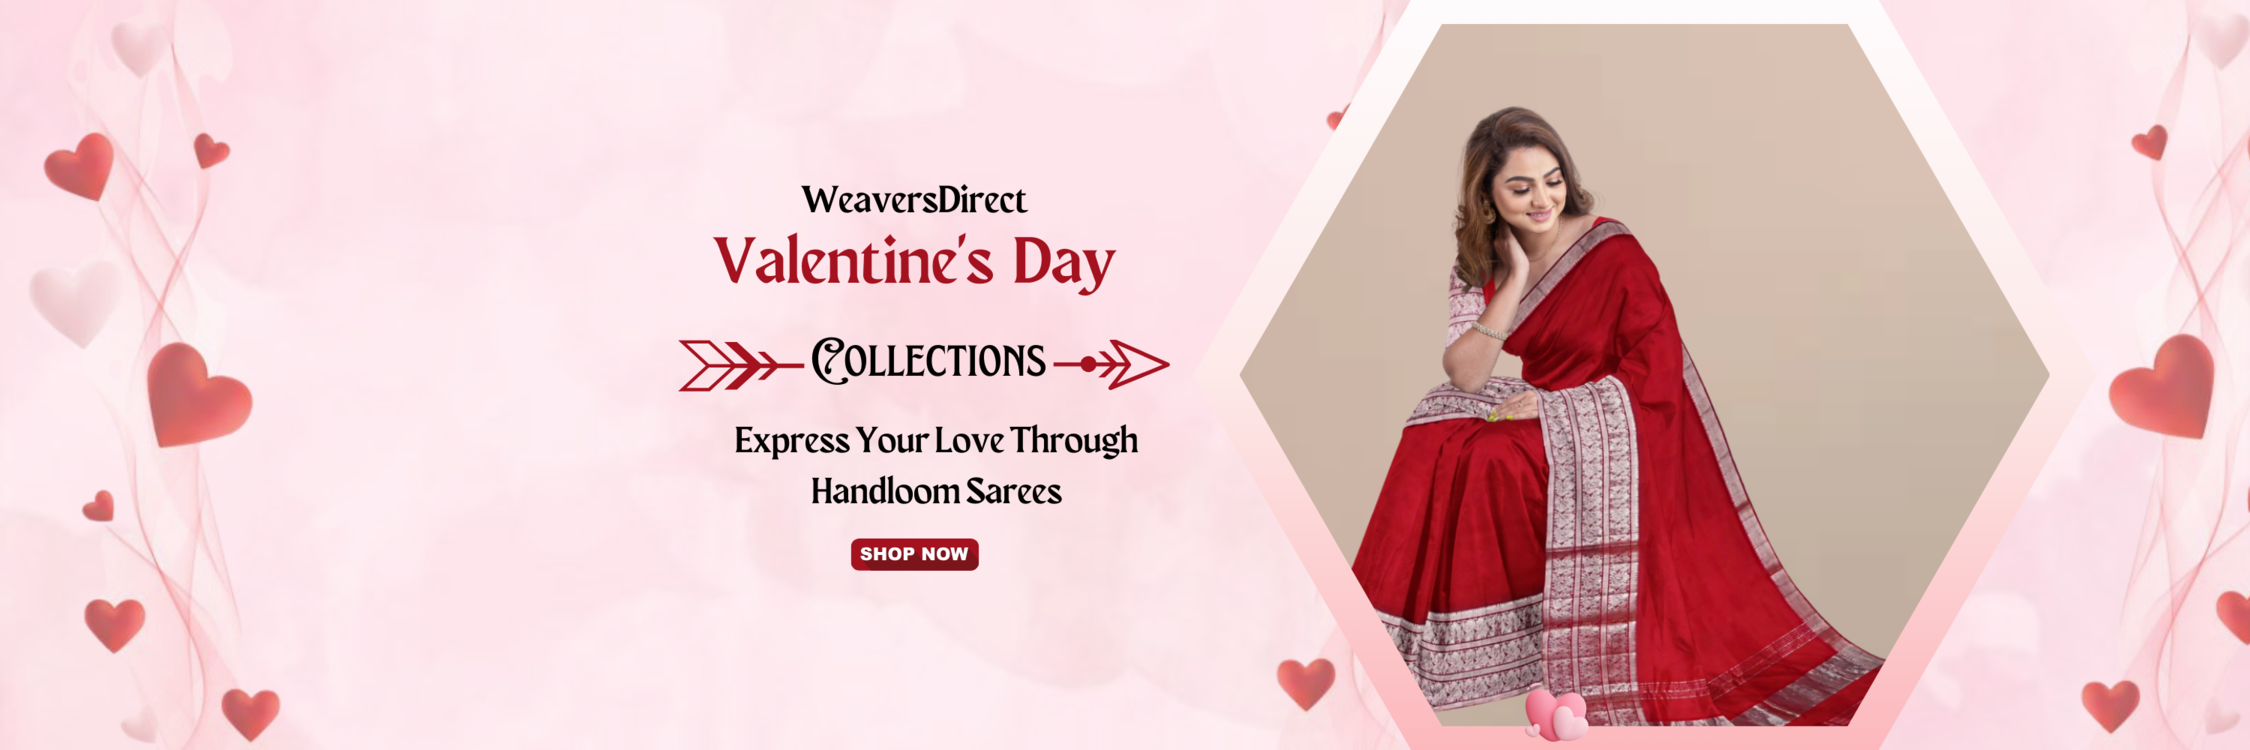 express your love through handloom sarees